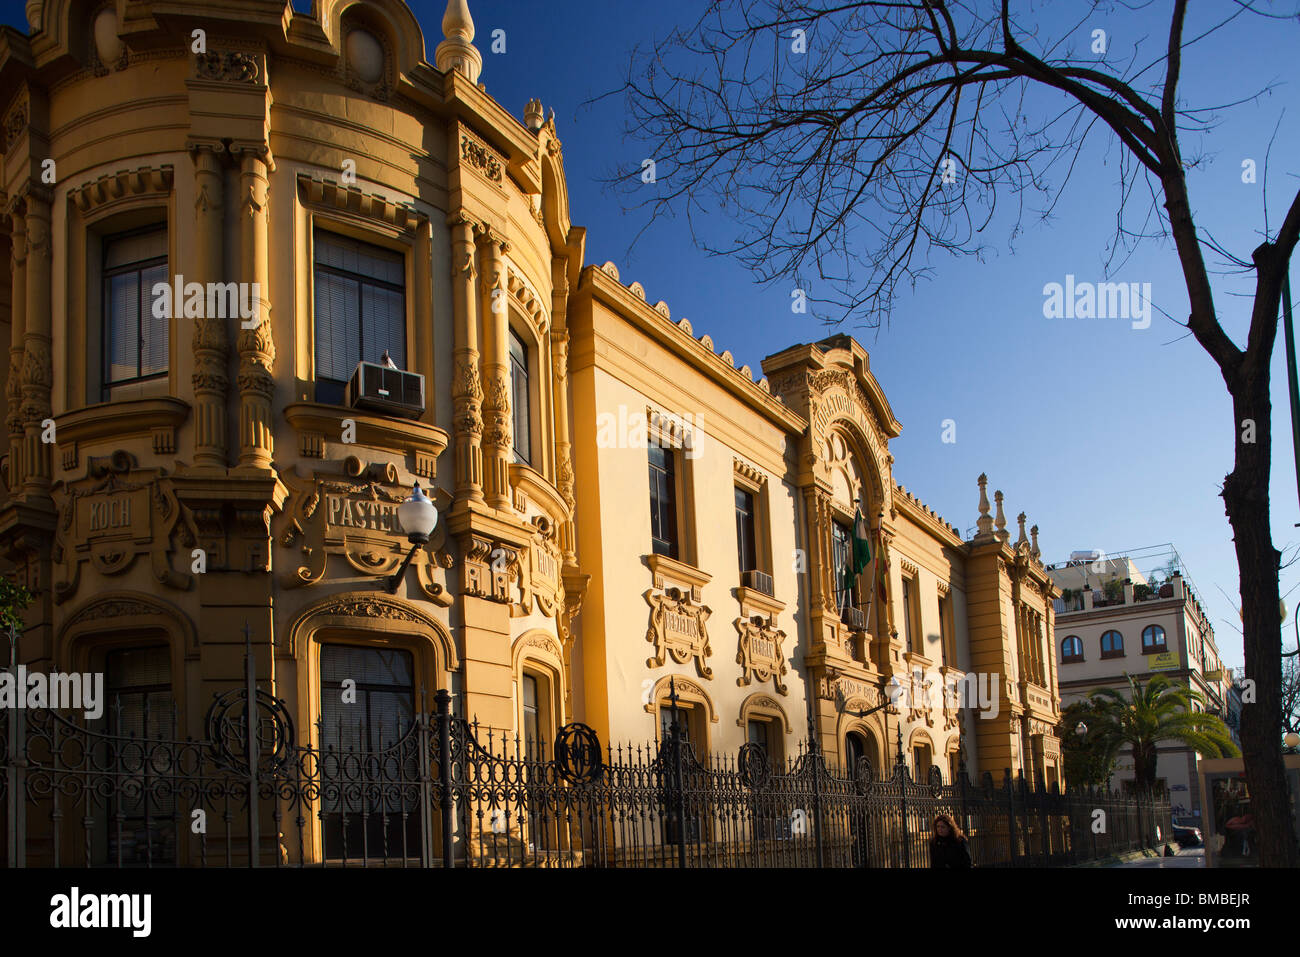 Laboratorio Municipal building (1912, design by the architect Antonio Arevalo Martinez), Seville, Spain Stock Photo